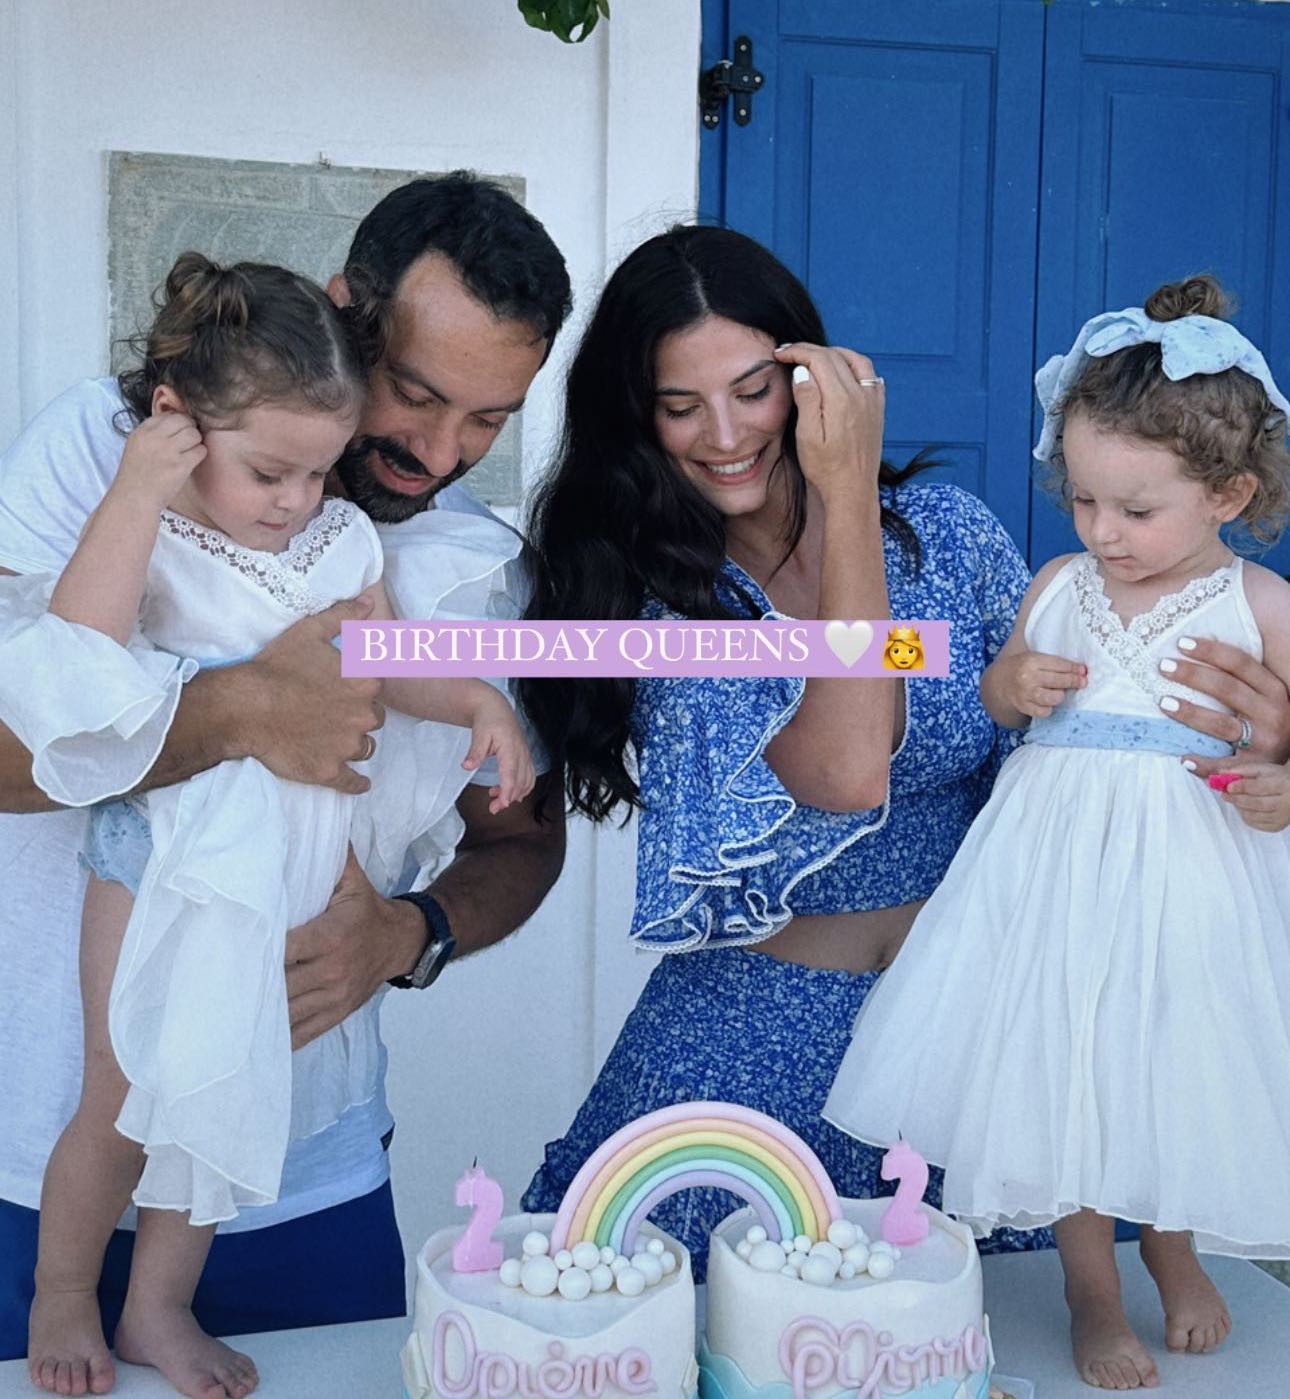 Σάκης Τανιμανίδης - Χριστίνα Μπόμπα: Τα κοριτσάκια τους έγιναν 2 ετών- η εντυπωσιακή τούρτα και τα υπέροχα φορέματα των διδύμων